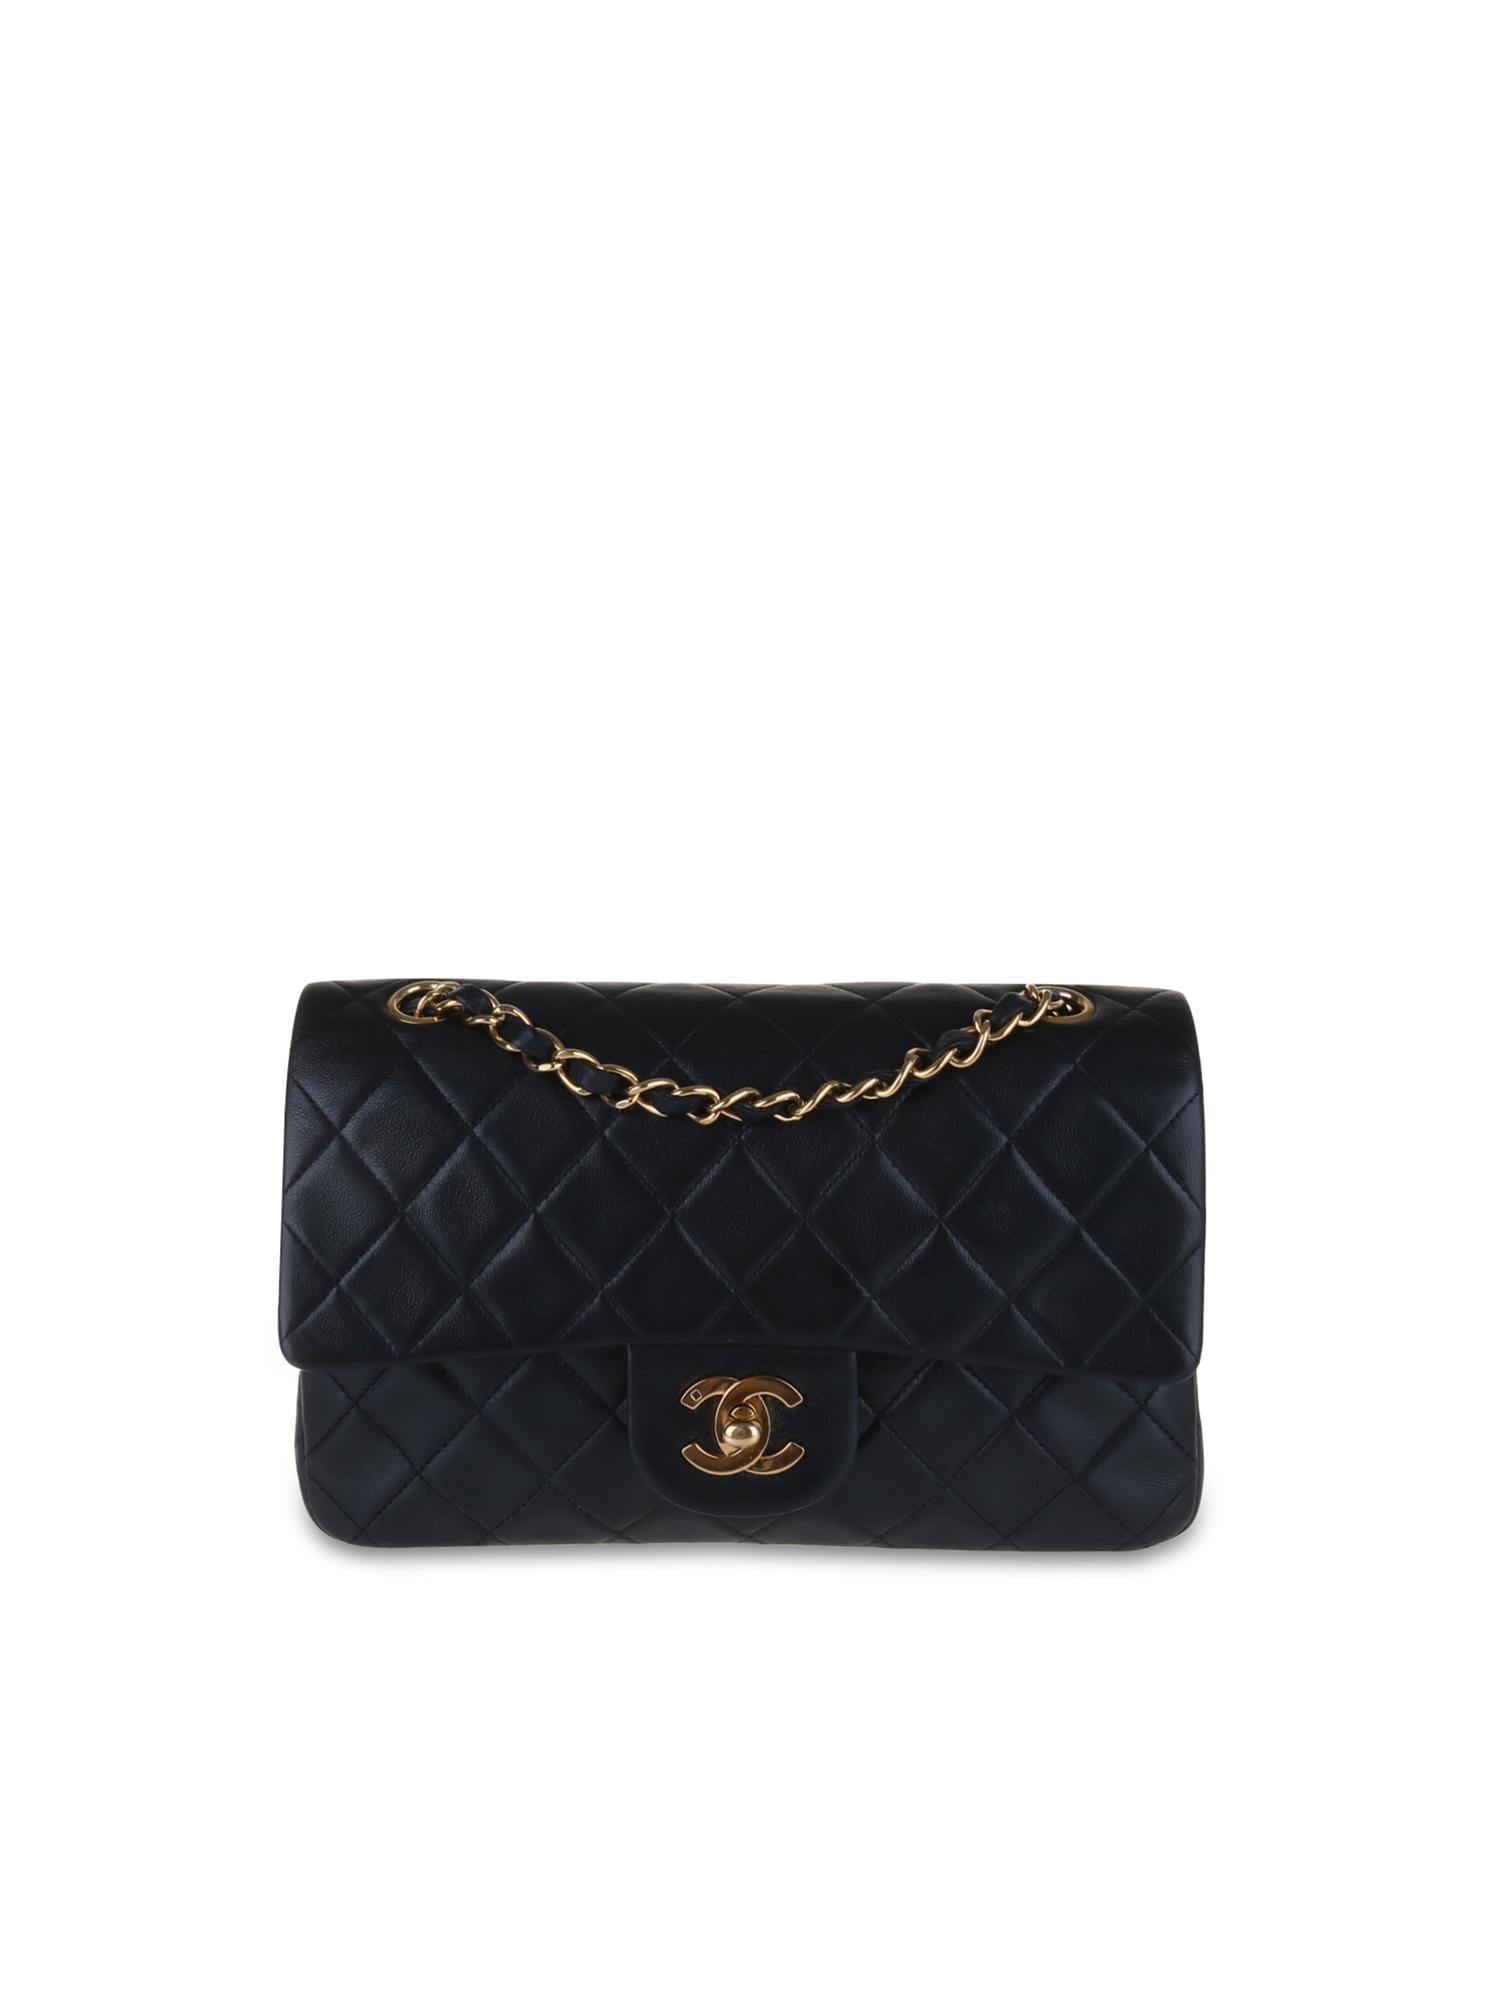 LUXE FINDS &#124 Chanel Black Lambskin 2.55 9"